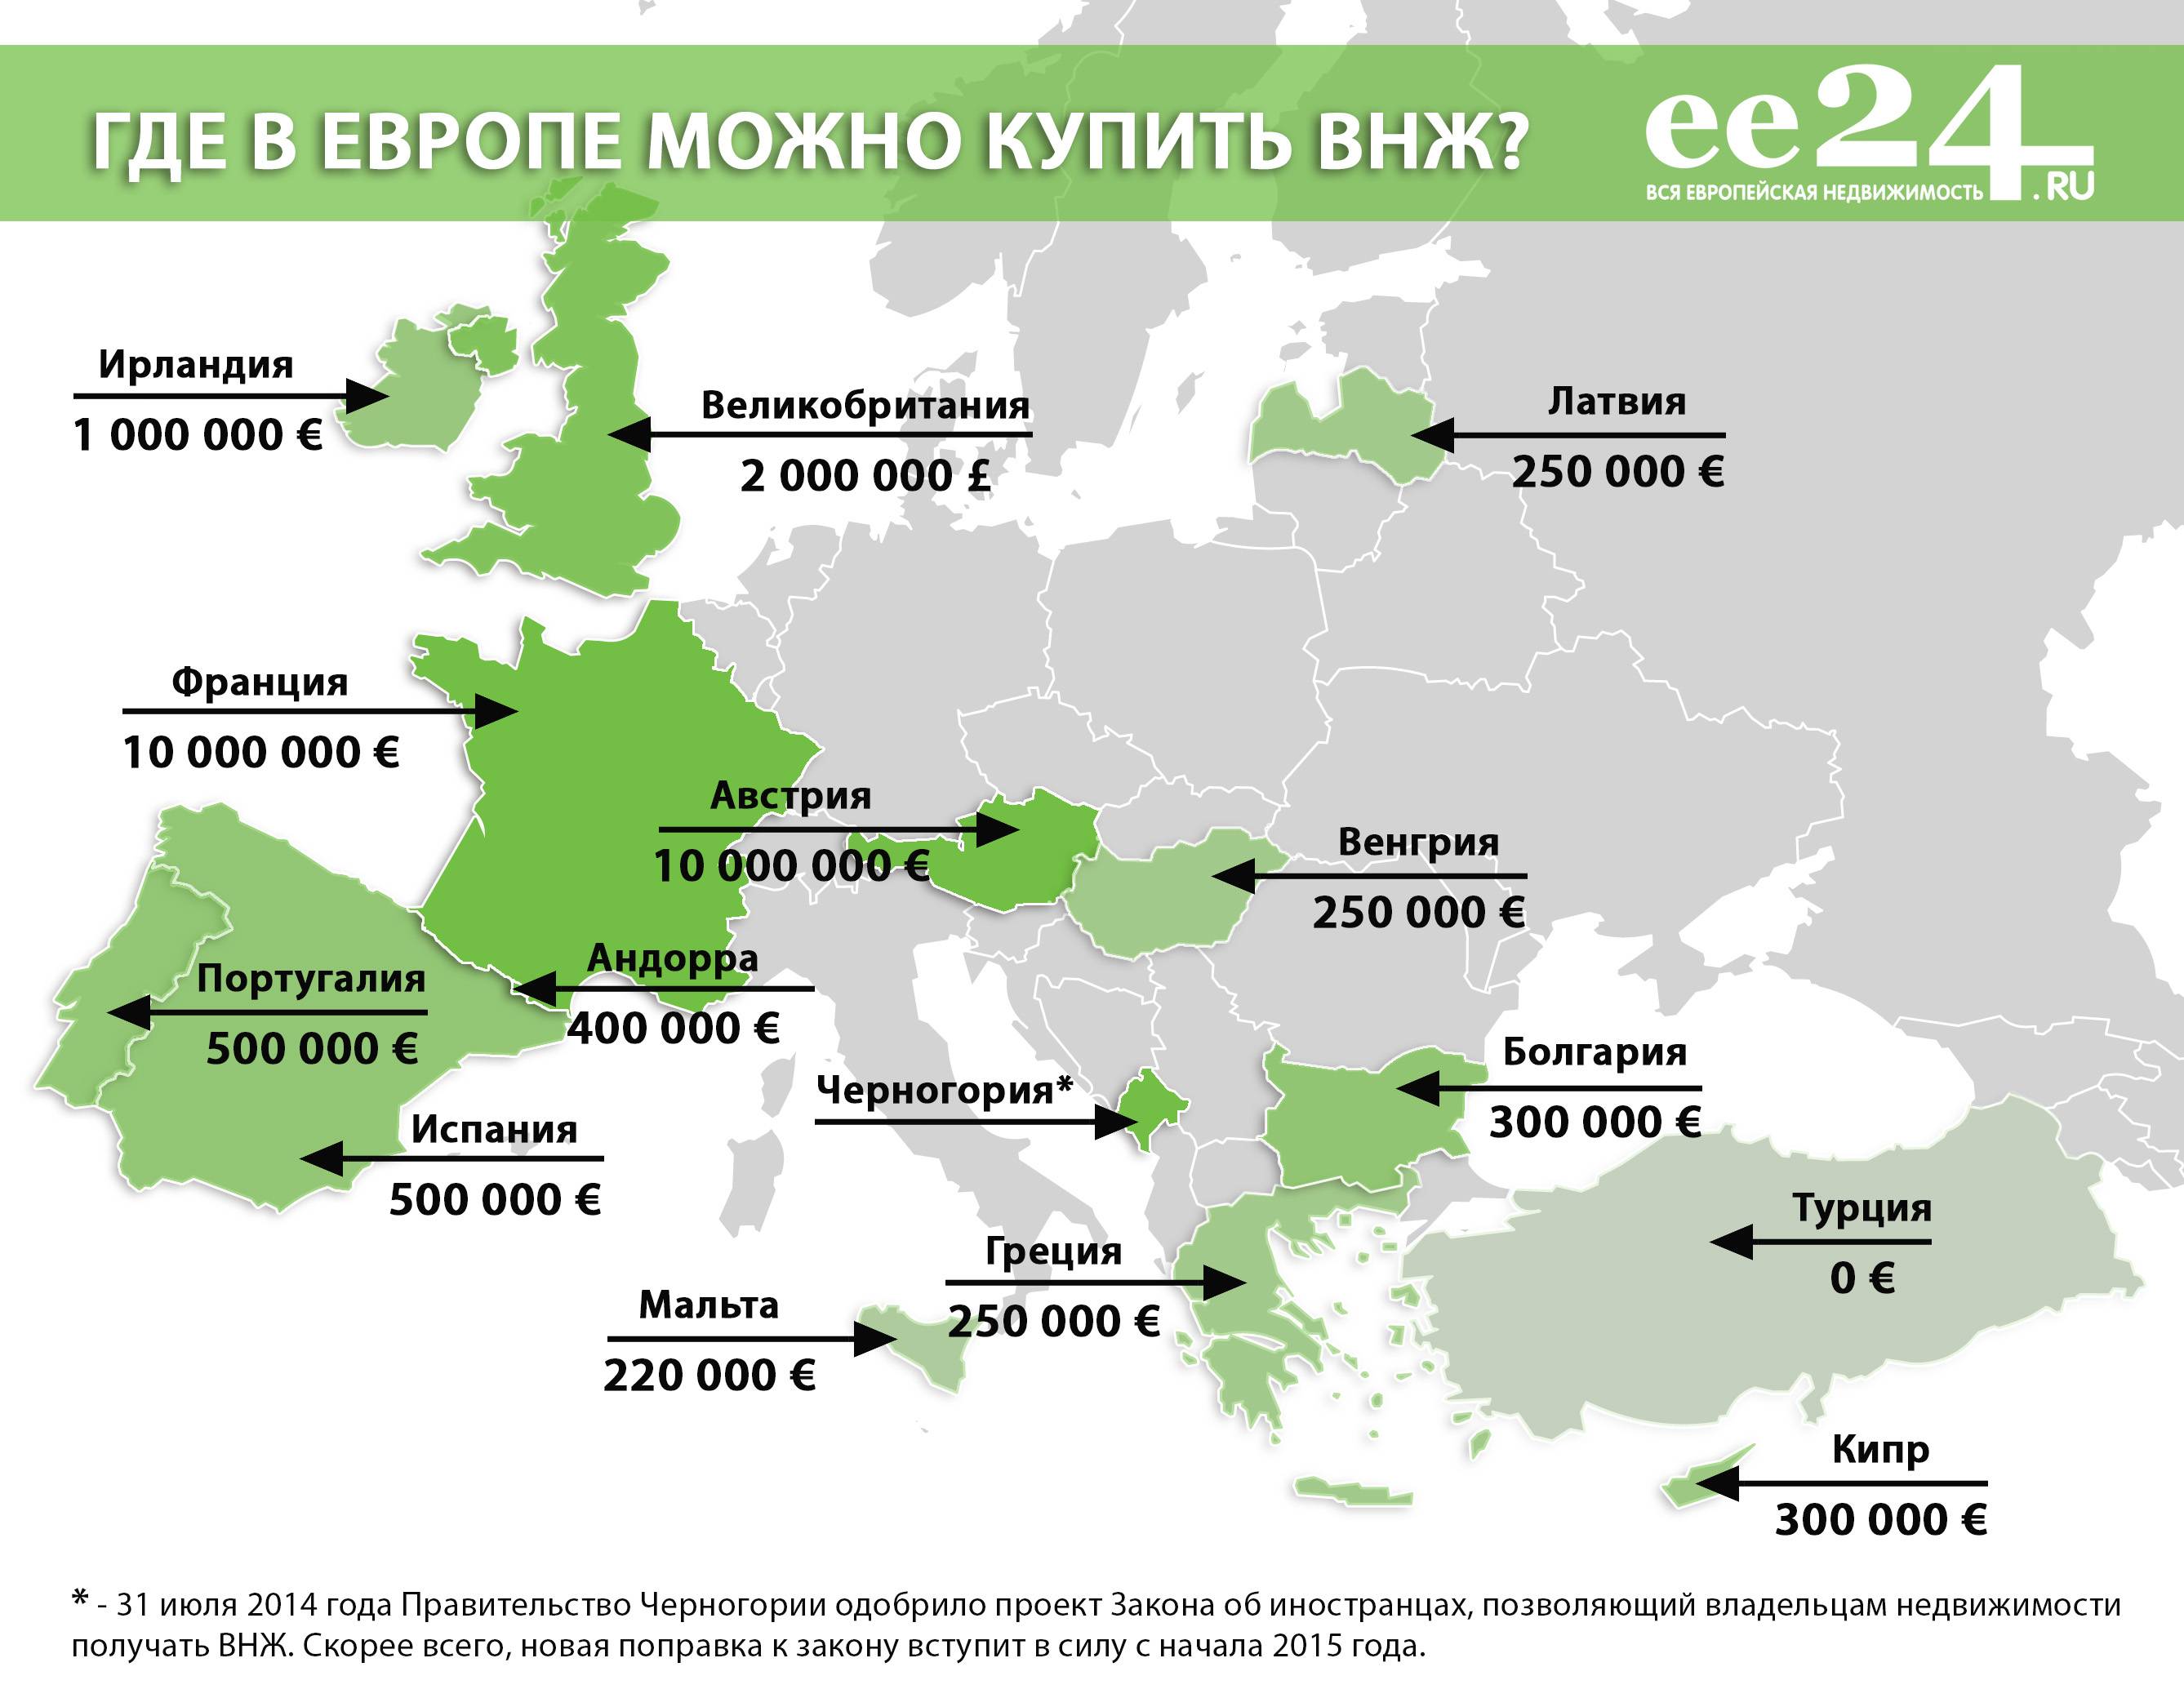 Вид на жительство в черногории: как получить, документы